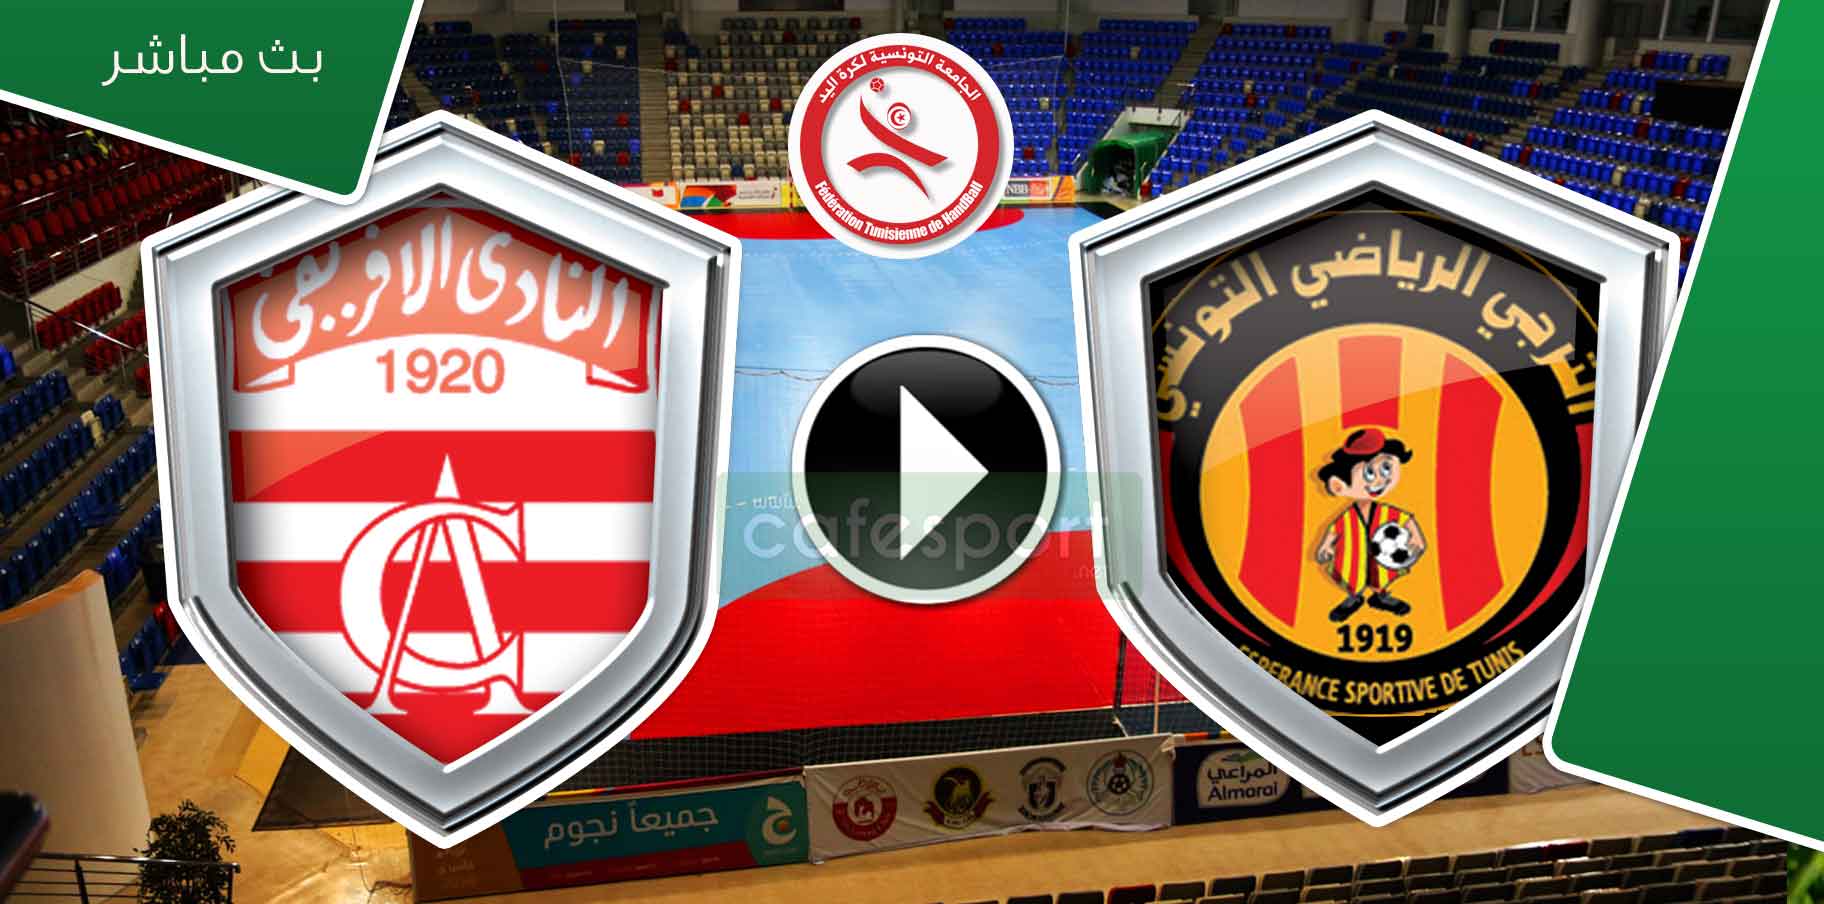 بث مباشر لمباراة الترجي التونسي - النادي الافريقي